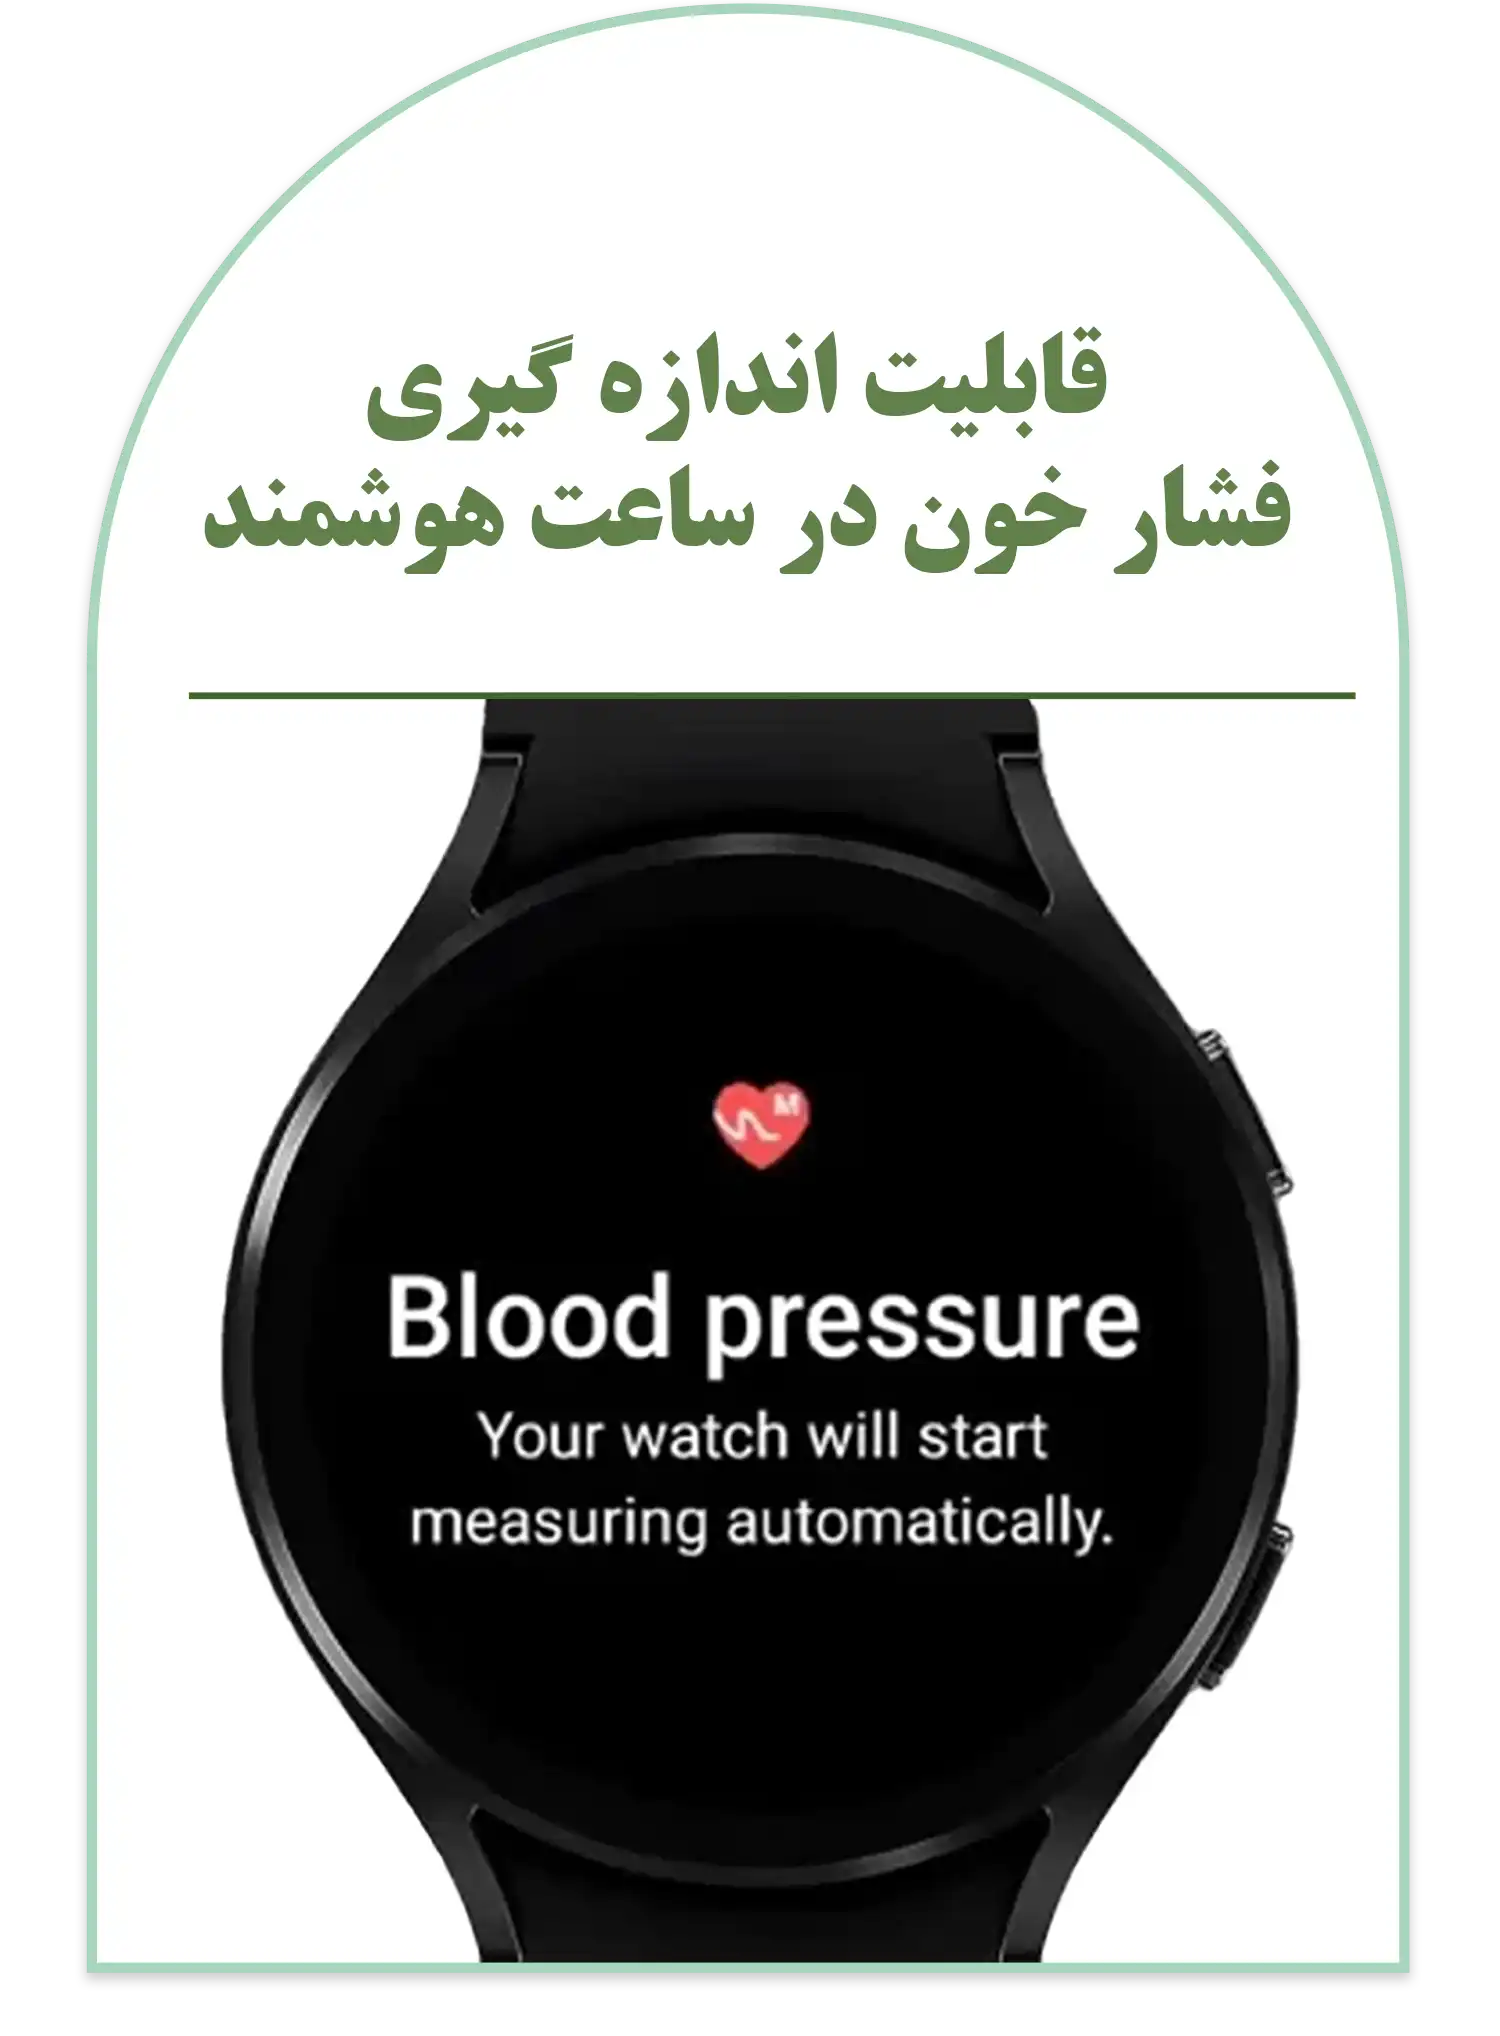 قابلیت اندازه گیری فشار خون